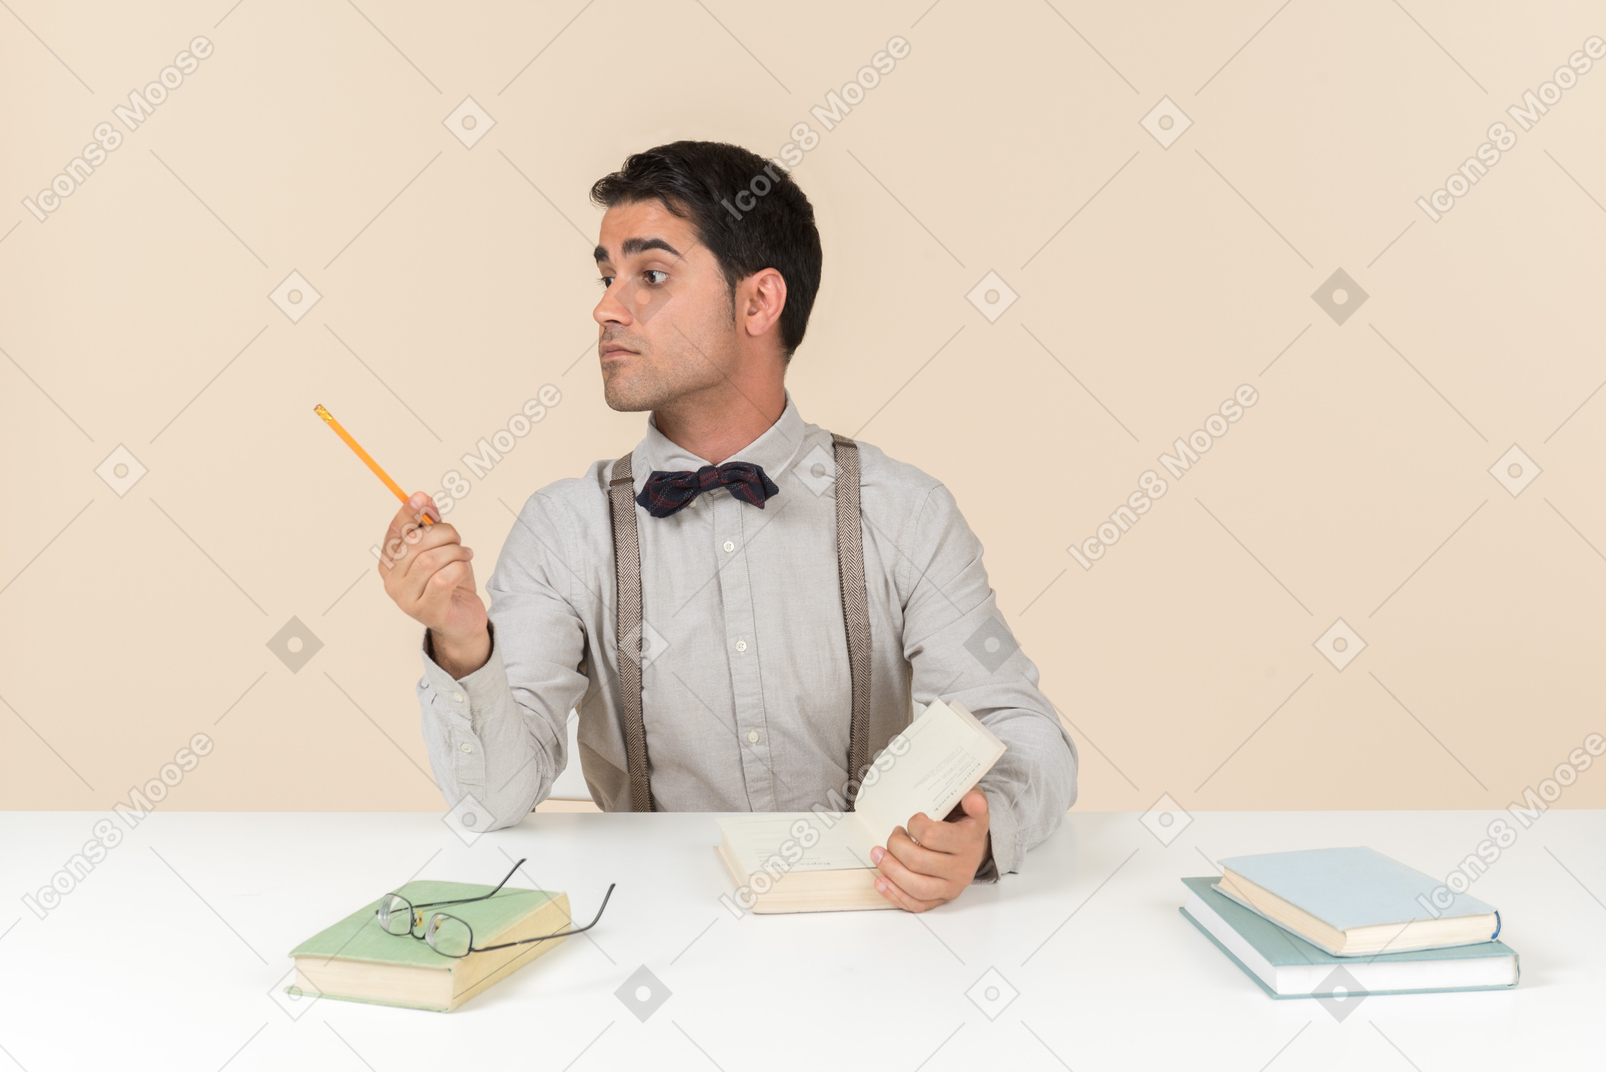 Estudiante adulto sentado en la mesa y apuntando a un lado con un bolígrafo